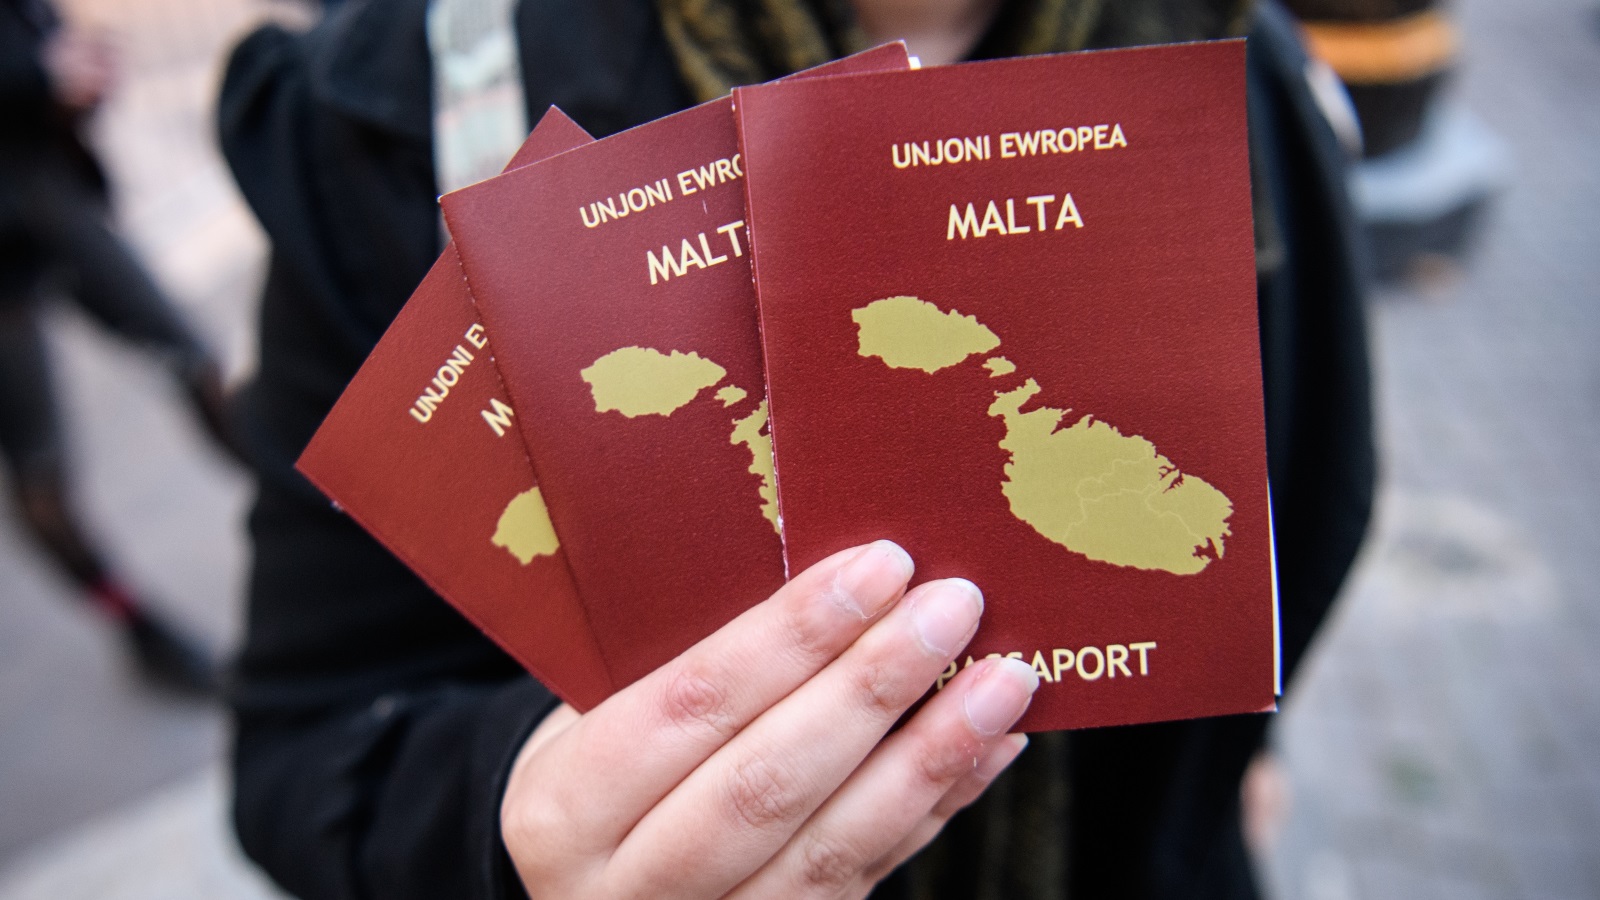 ‪جواز السفر المالطي يتيح لحامله حرية التنقل في كافة دول الاتحاد الأوروبي‬ (غيتي)